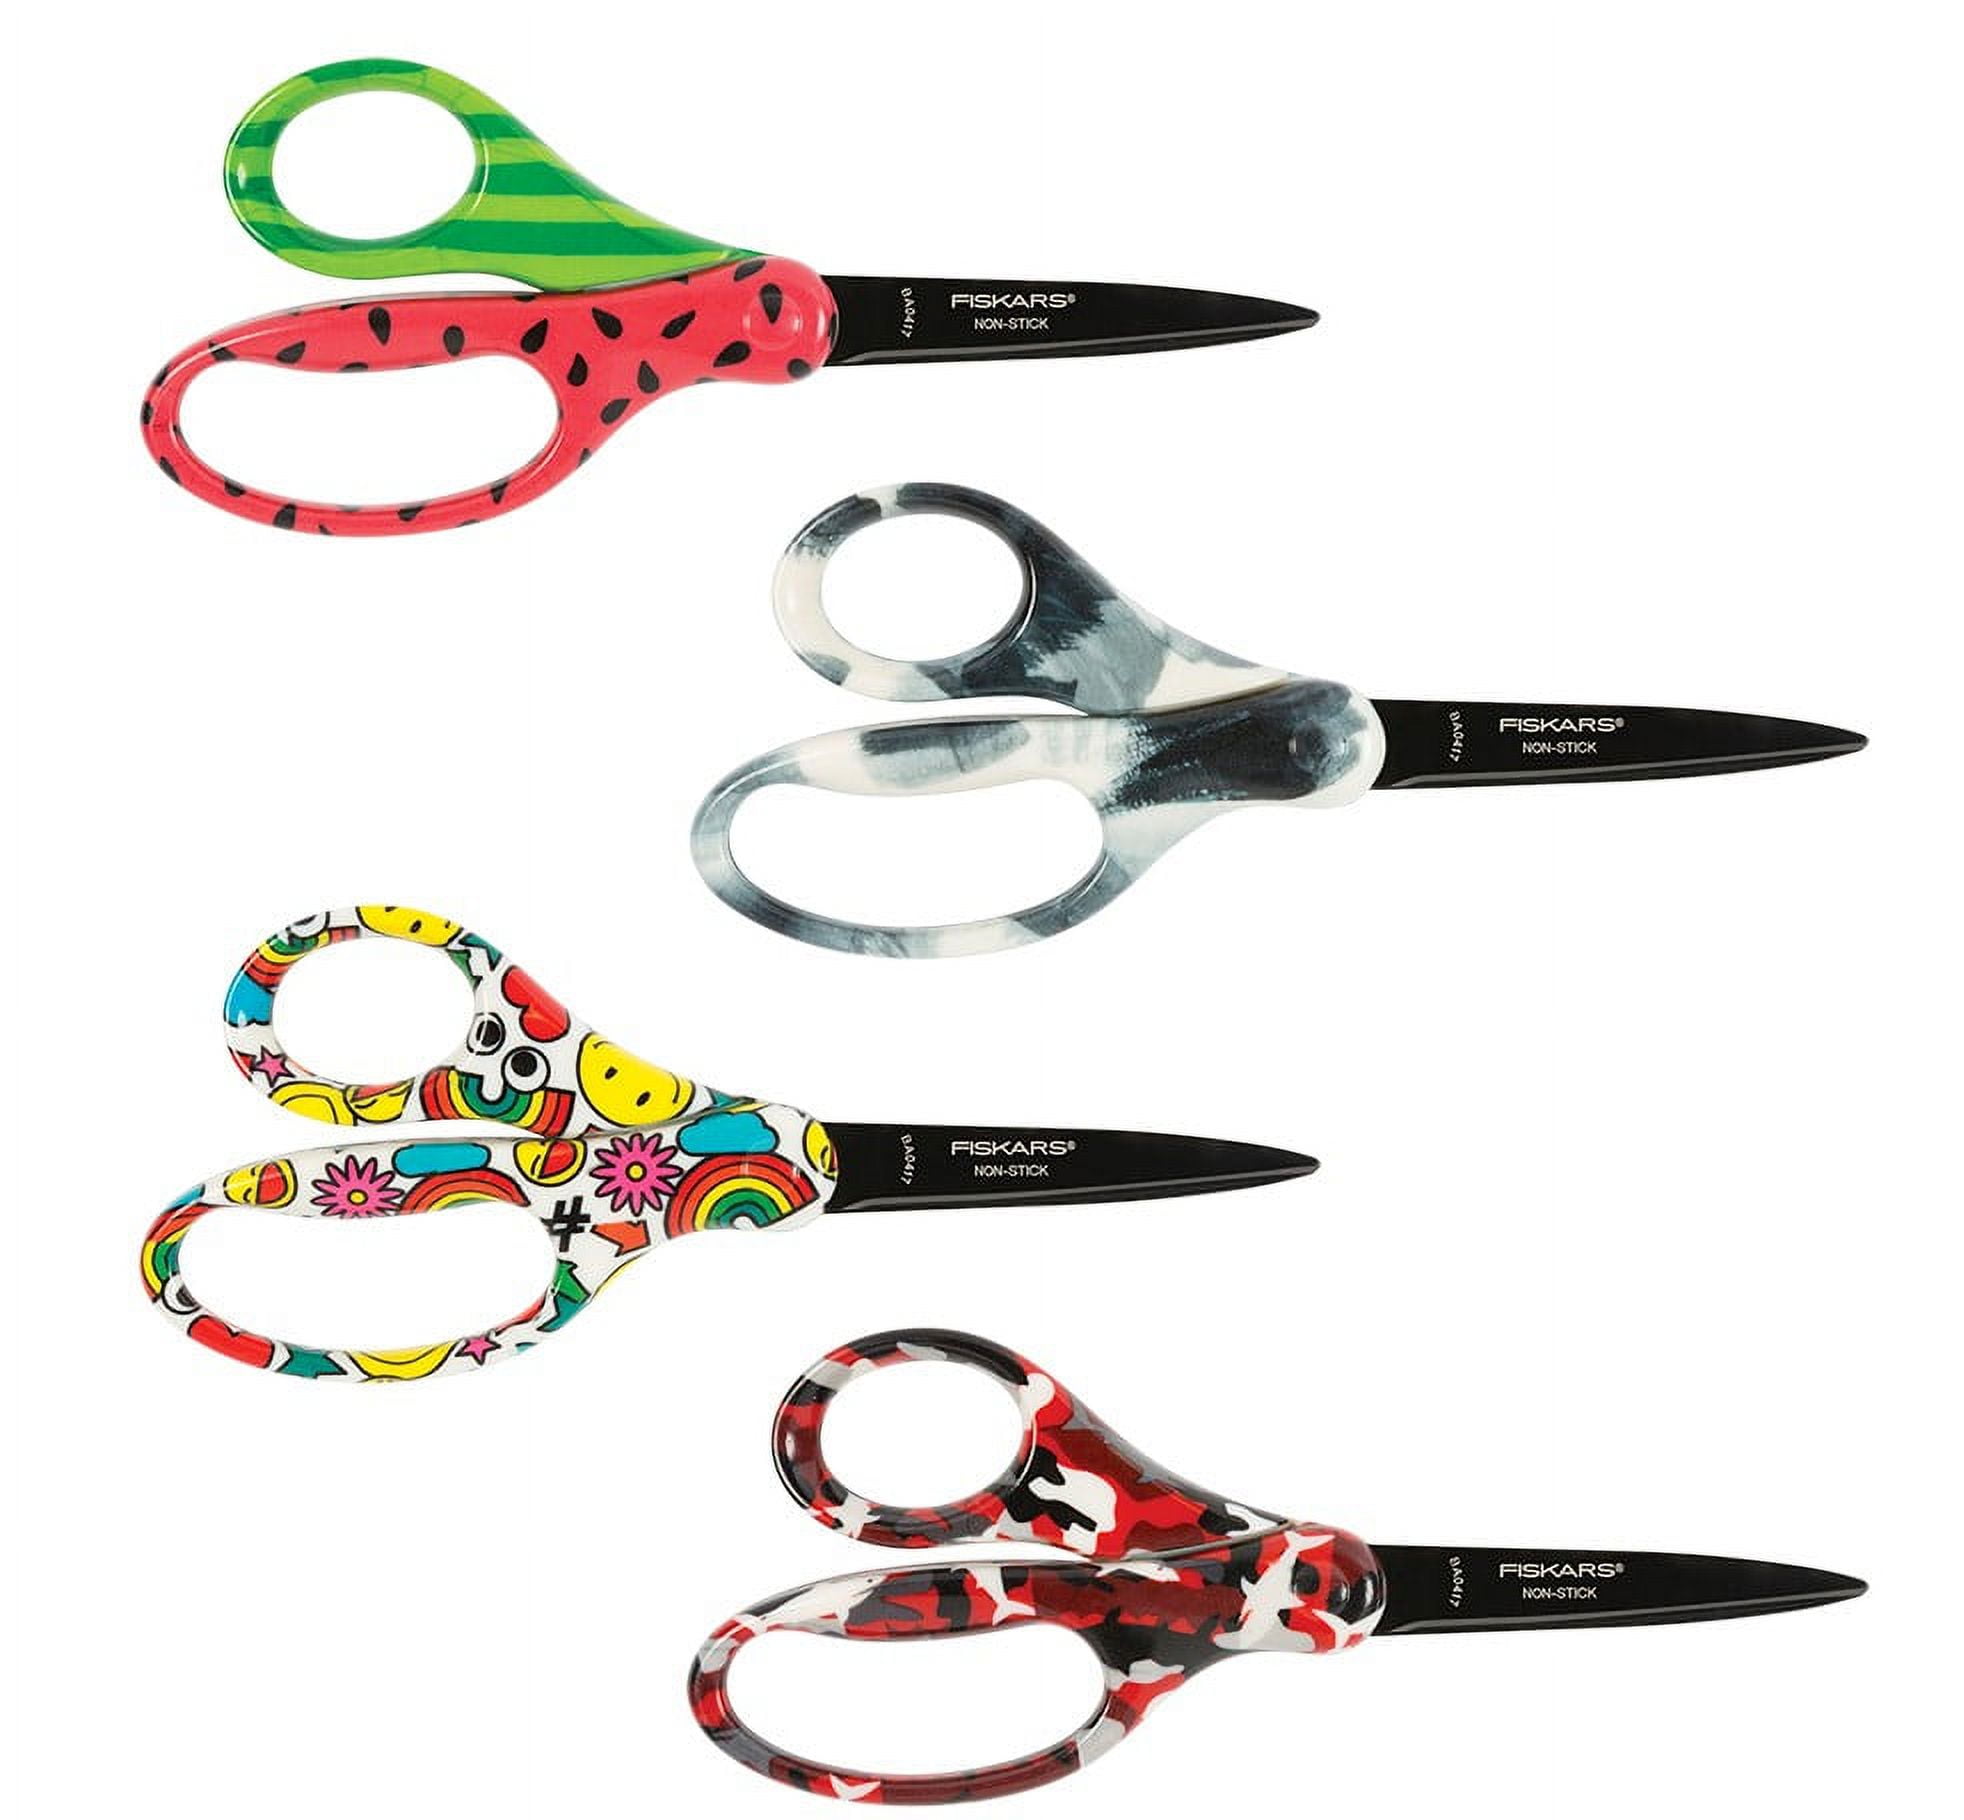 Fiskars Student Scissors, Non-stick Coating. 